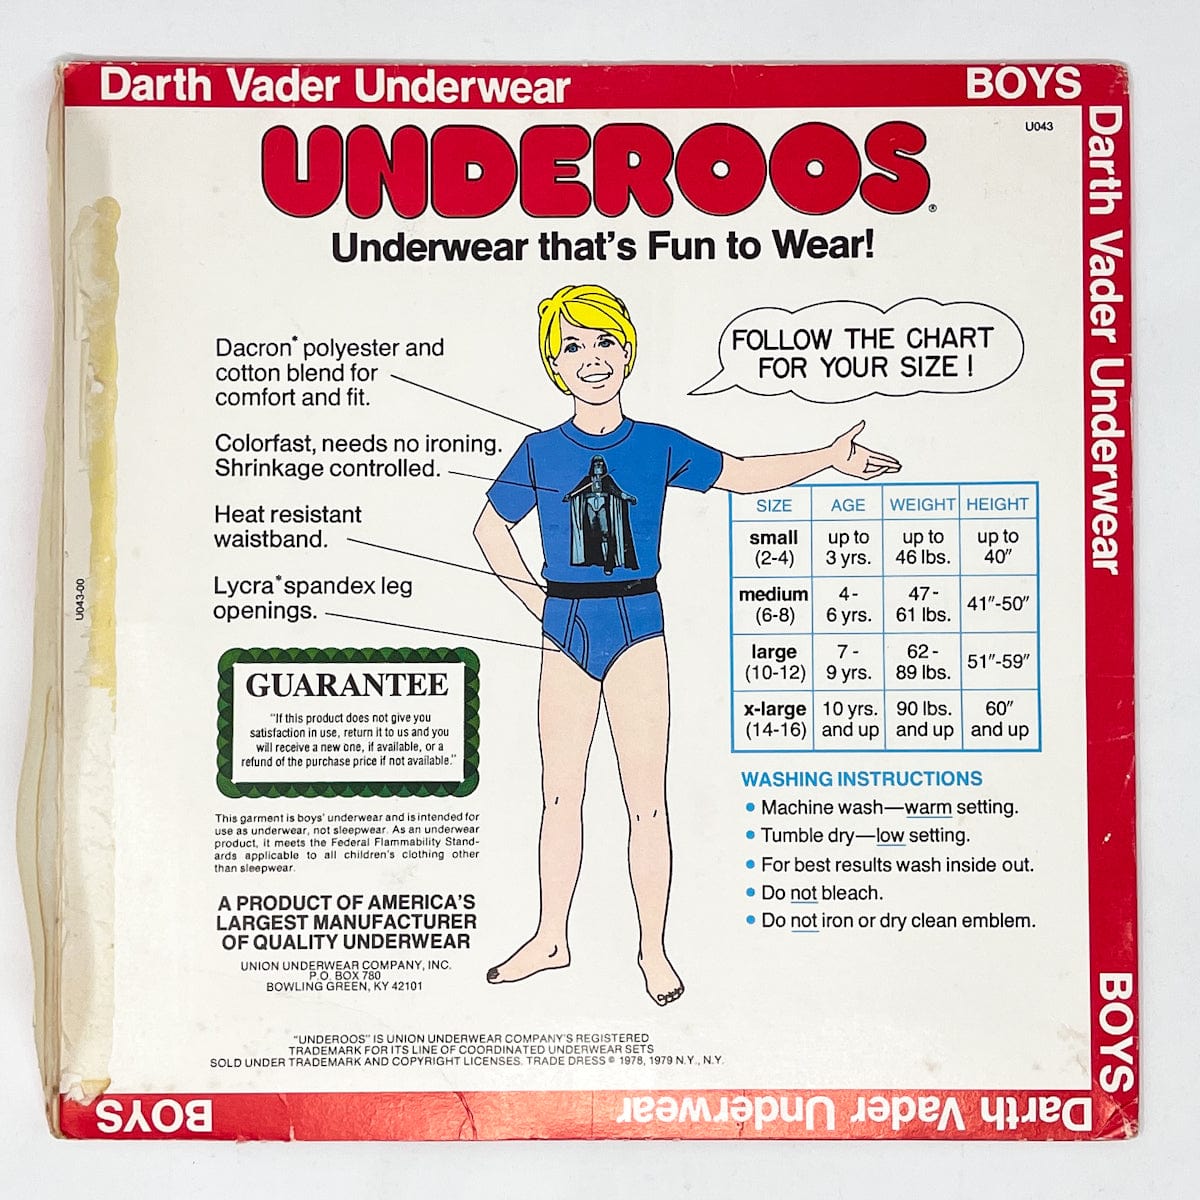 Darth Vader Underoos - Package(1980)